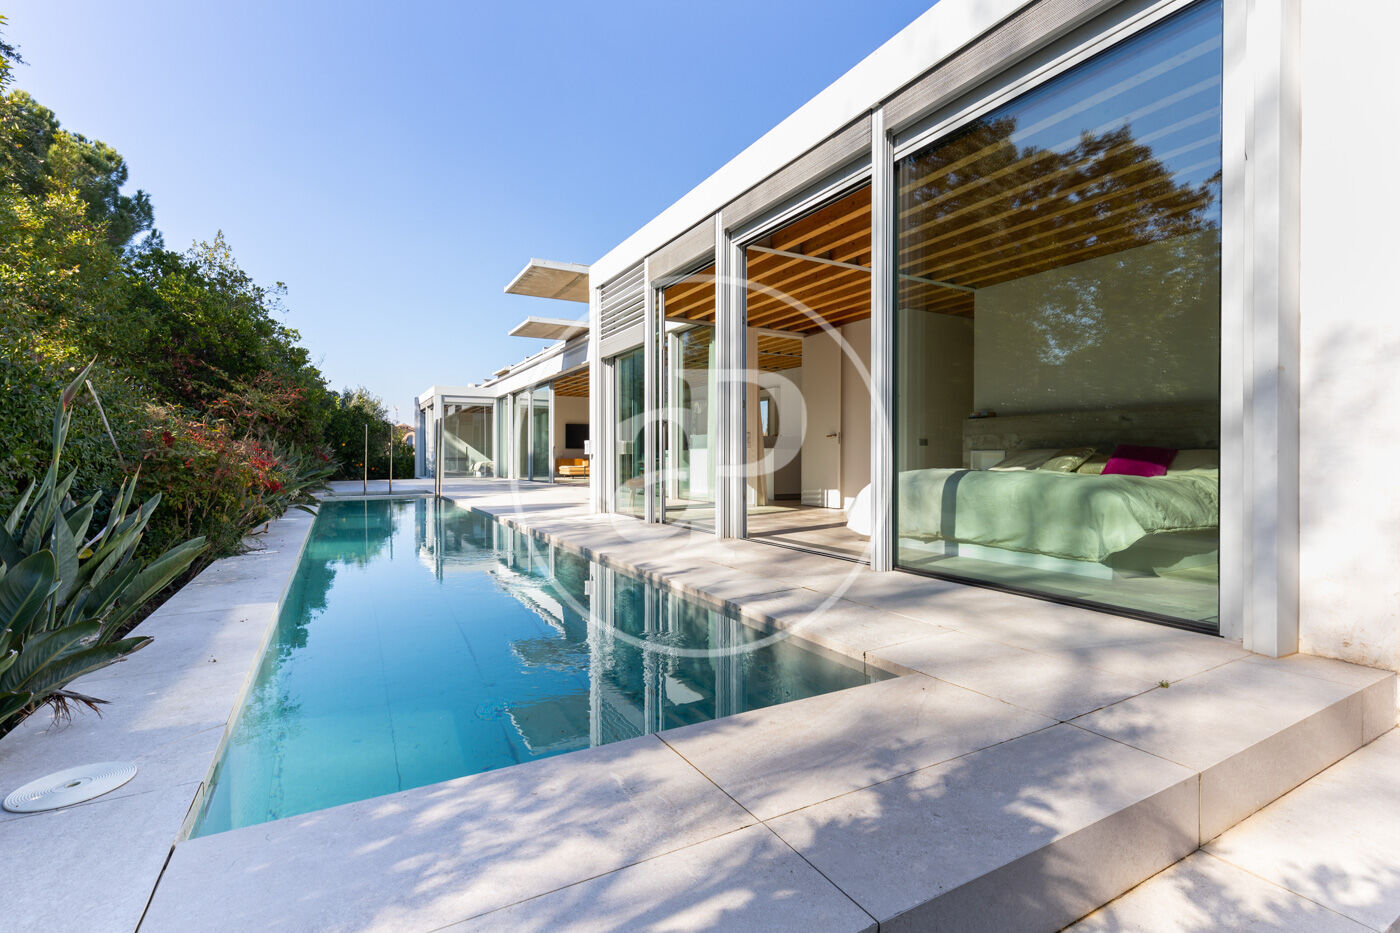 Casa unifamiliar de luxe amb piscina en zona Masia Roses